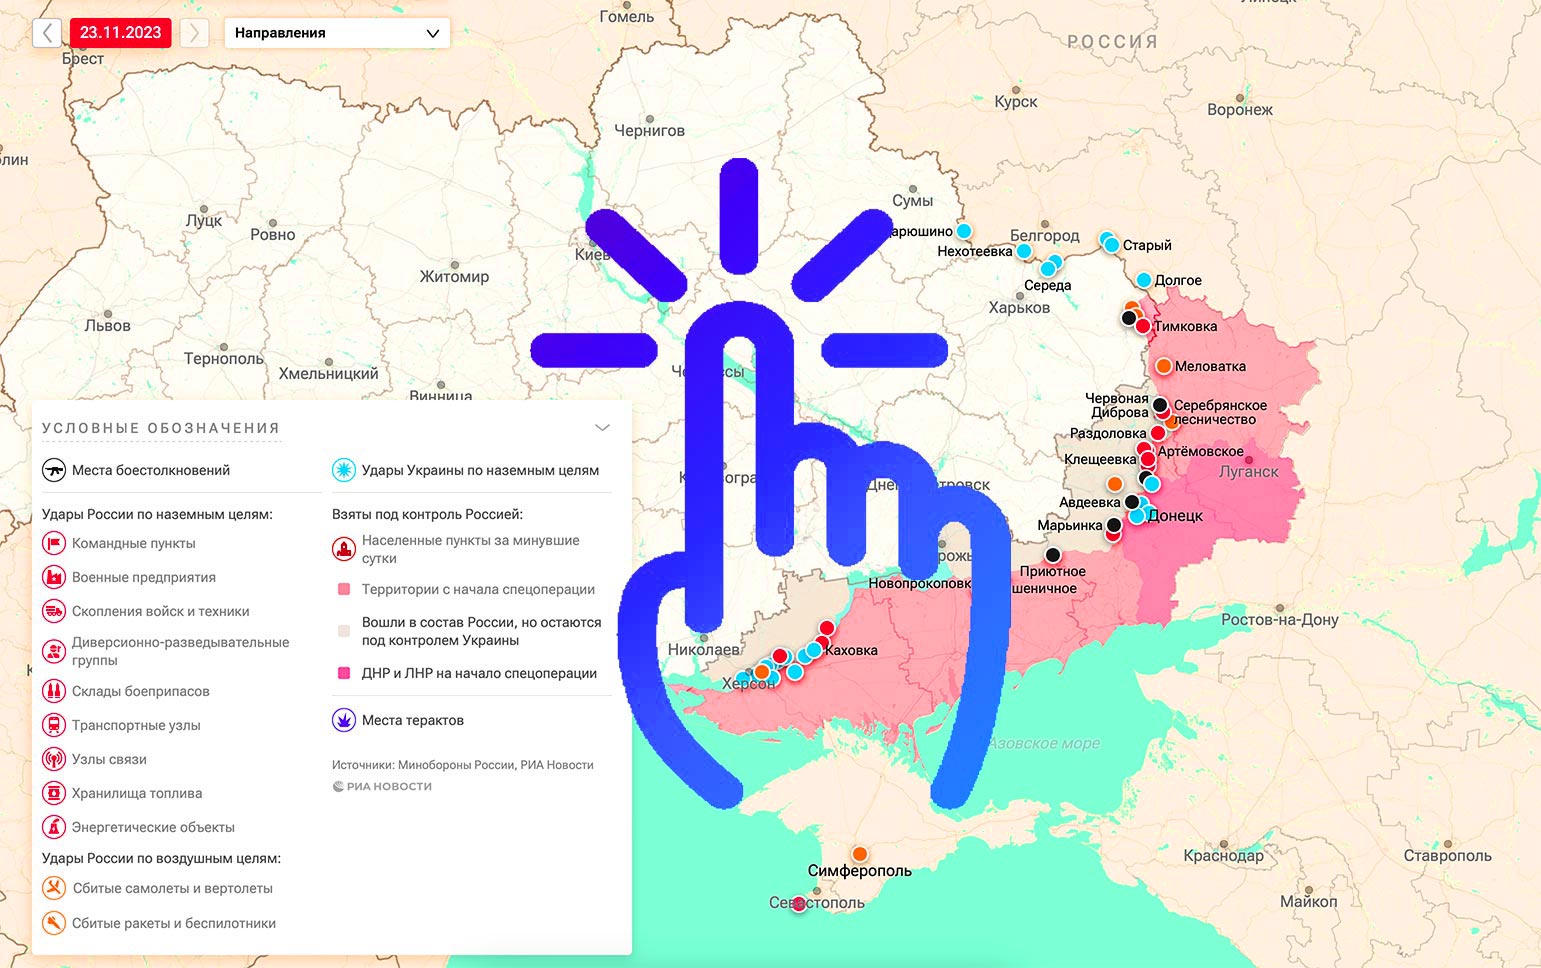 карта спецоперации на Украине от 23.11.2023 года - сводка СВО сегодня